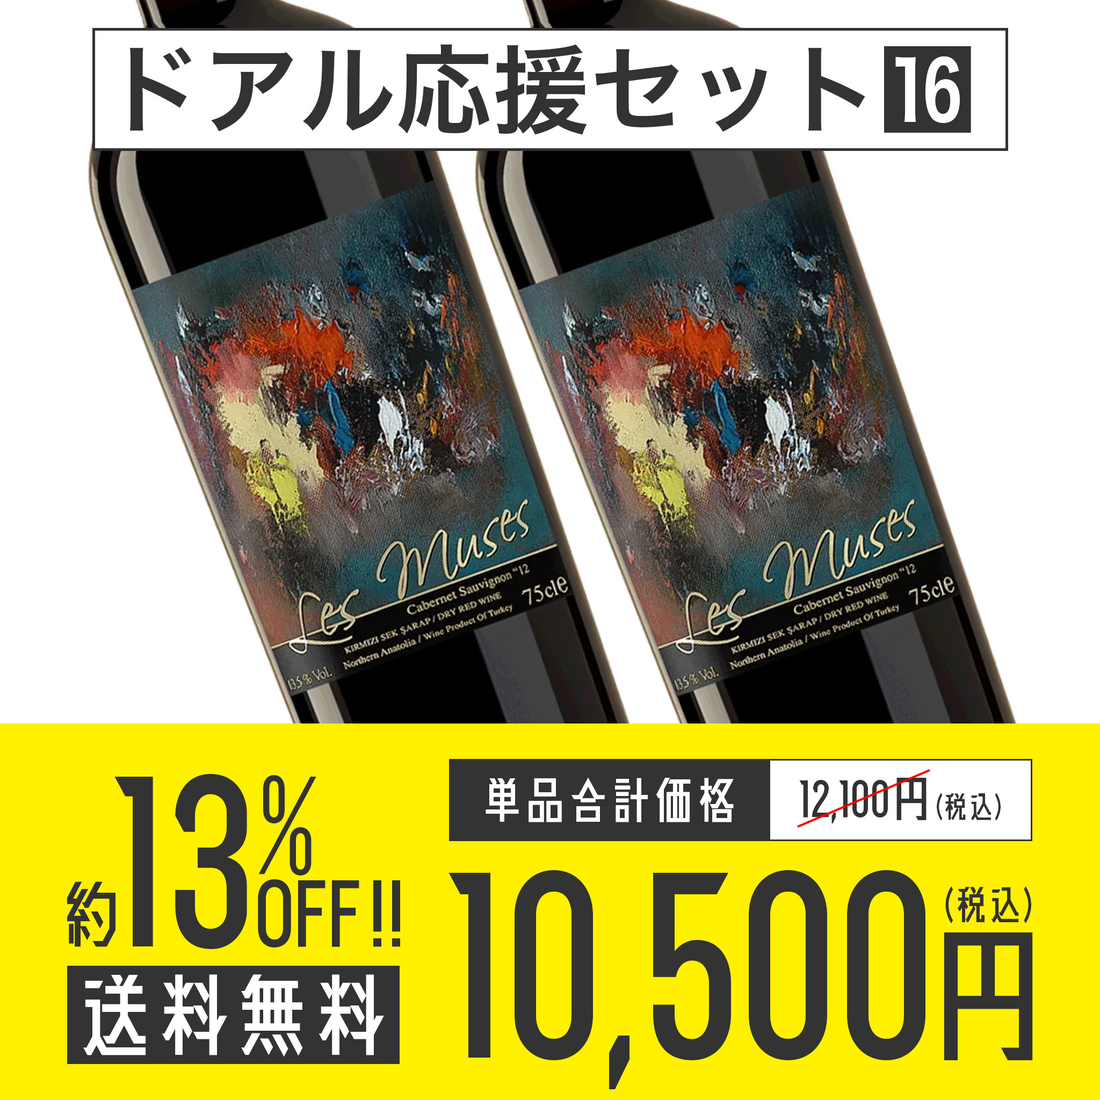 【送料無料】ドアル応援セット No.16 Diren Wine レ・ミューズ 赤ワイン2本セット